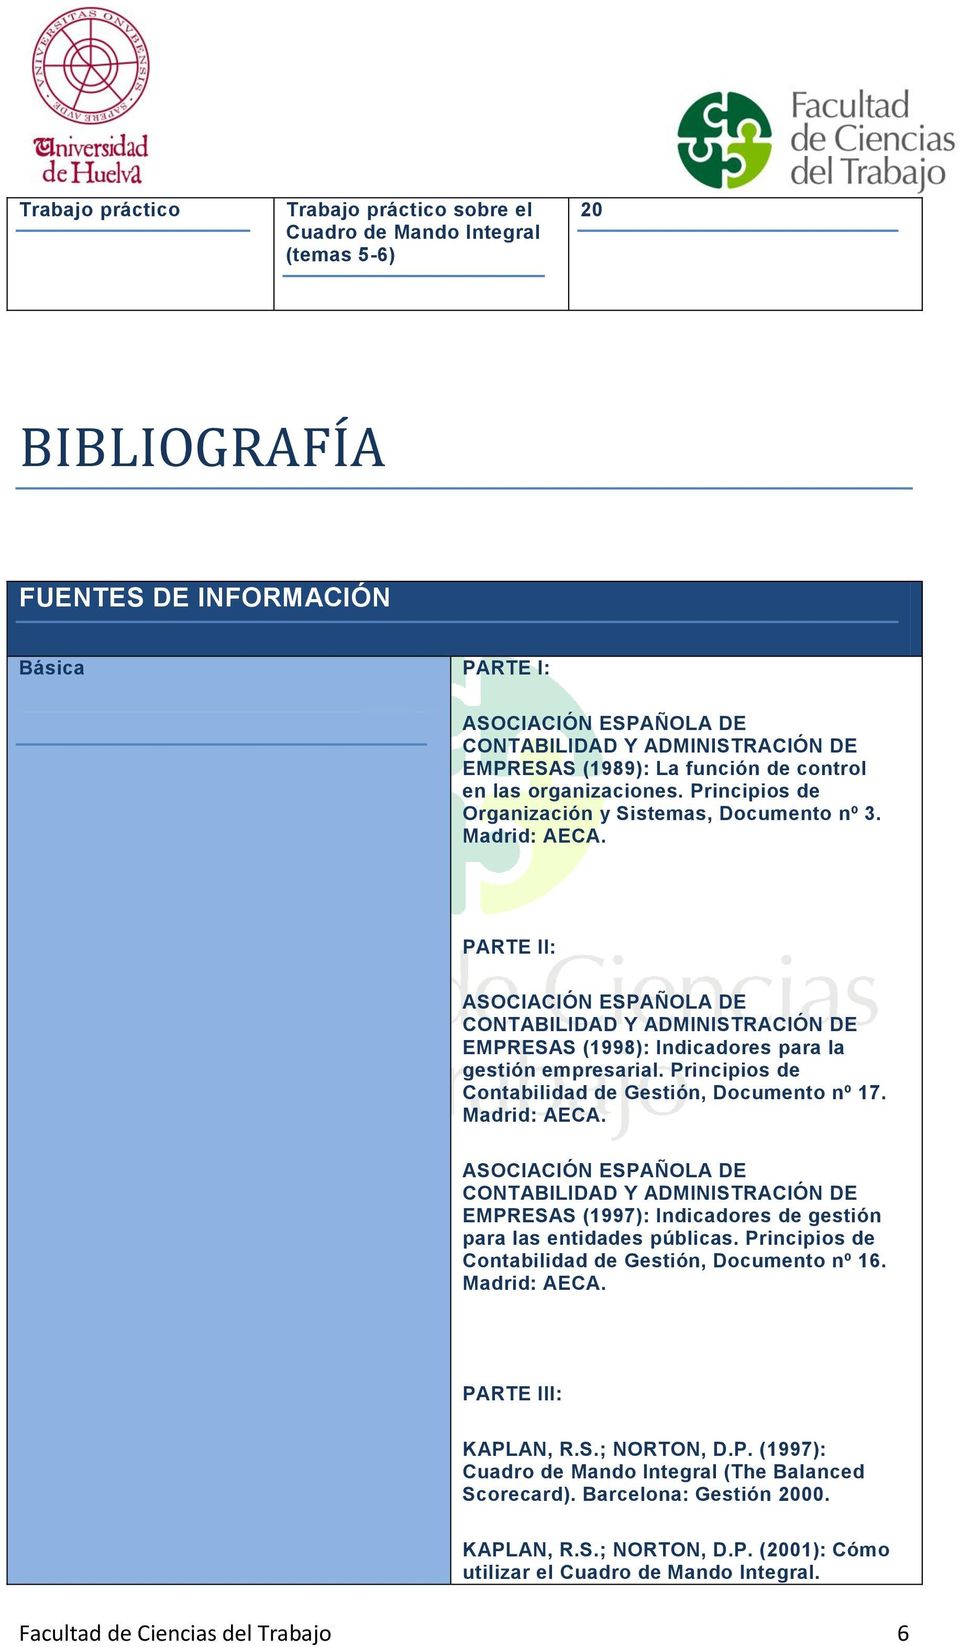 PARTE II: ASOCIACIÓN ESPAÑOLA DE CONTABILIDAD Y ADMINISTRACIÓN DE EMPRESAS (1998): Indicadores para la gestión empresarial. Principios de Contabilidad de Gestión, Documento nº 17.